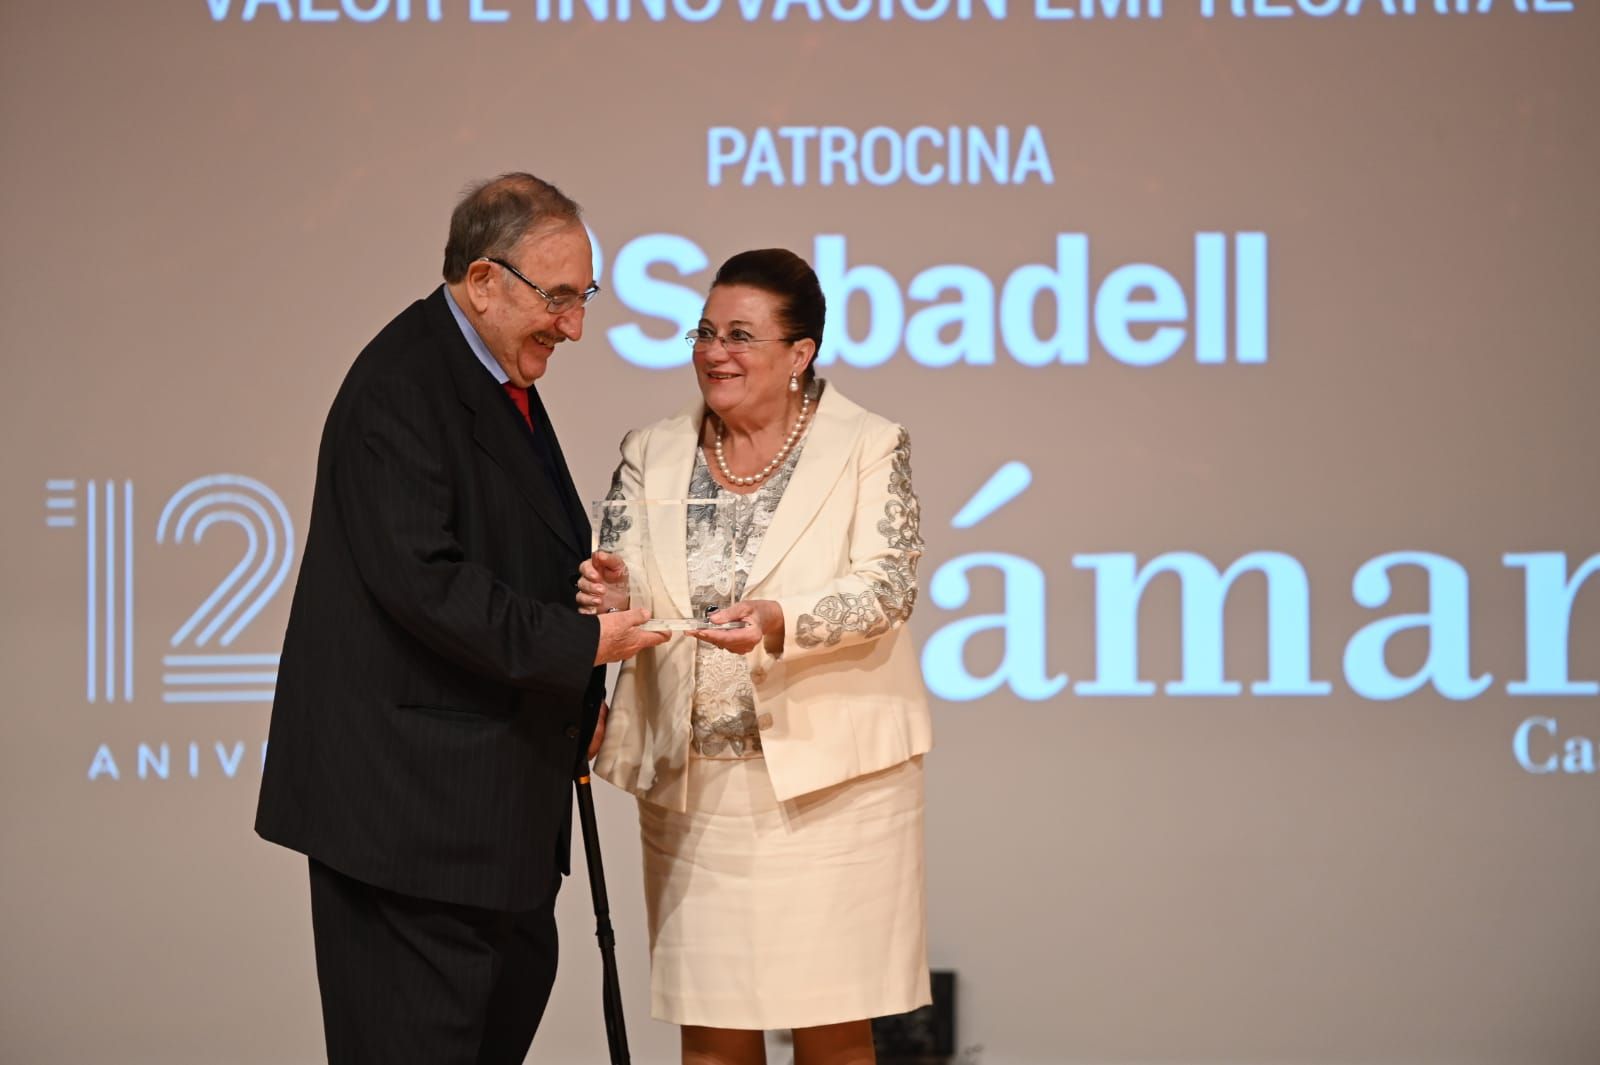 Entrega de premios en el acto de la Cámara de Comercio de Castellón